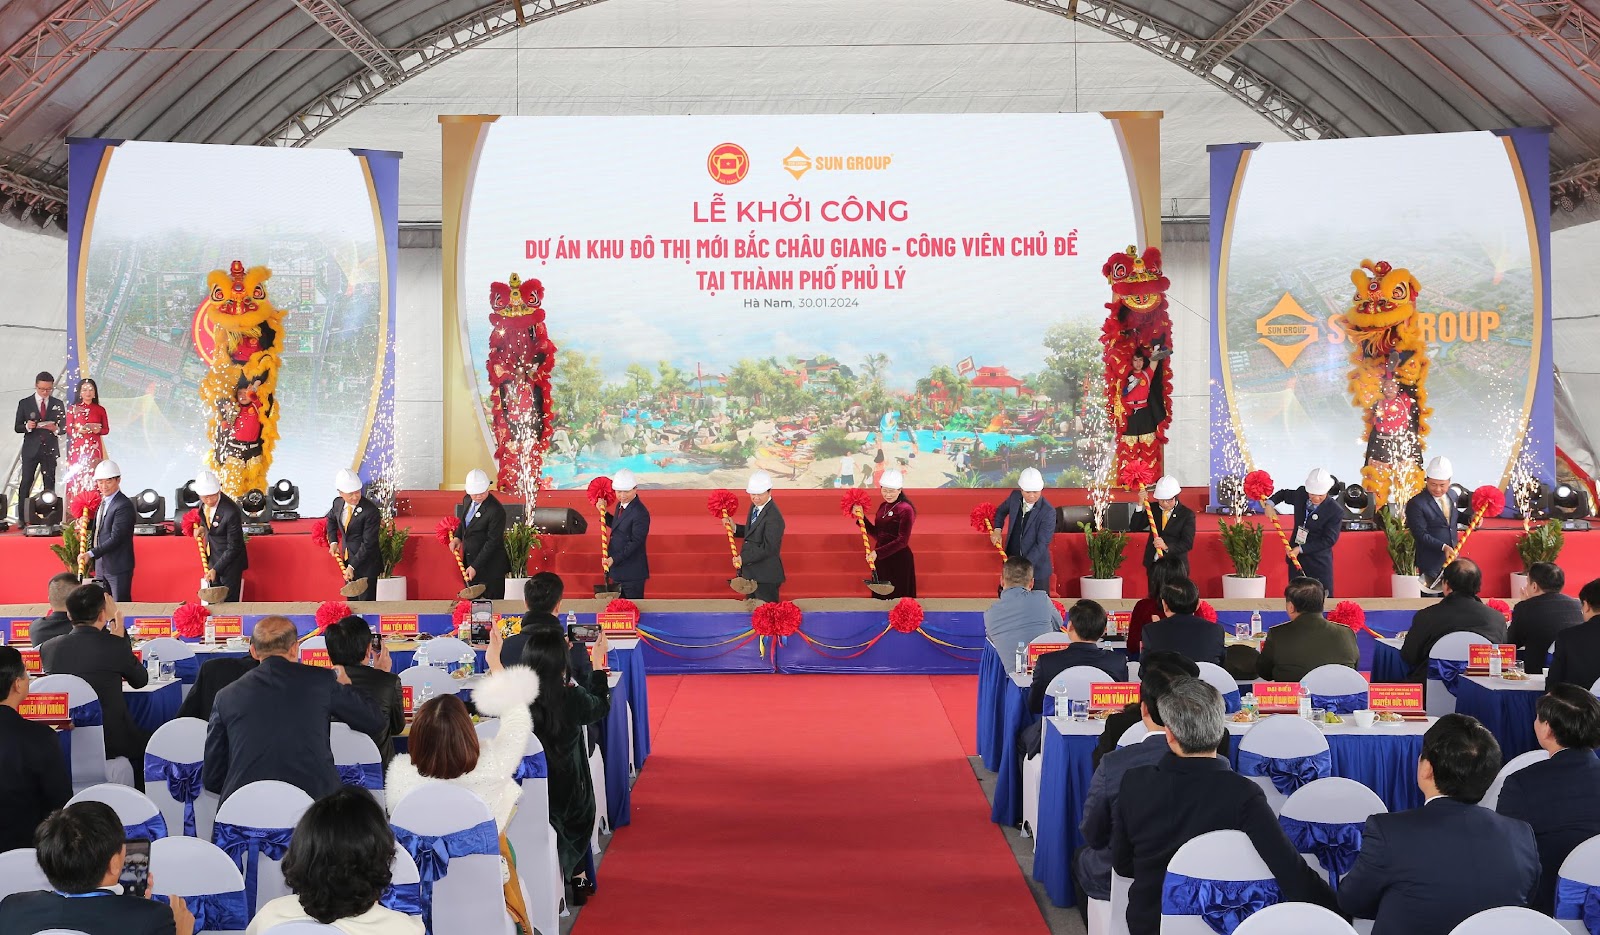 Lễ Khởi công Dự án KĐT mới Bắc Châu Giang - Công viên Chủ Đề